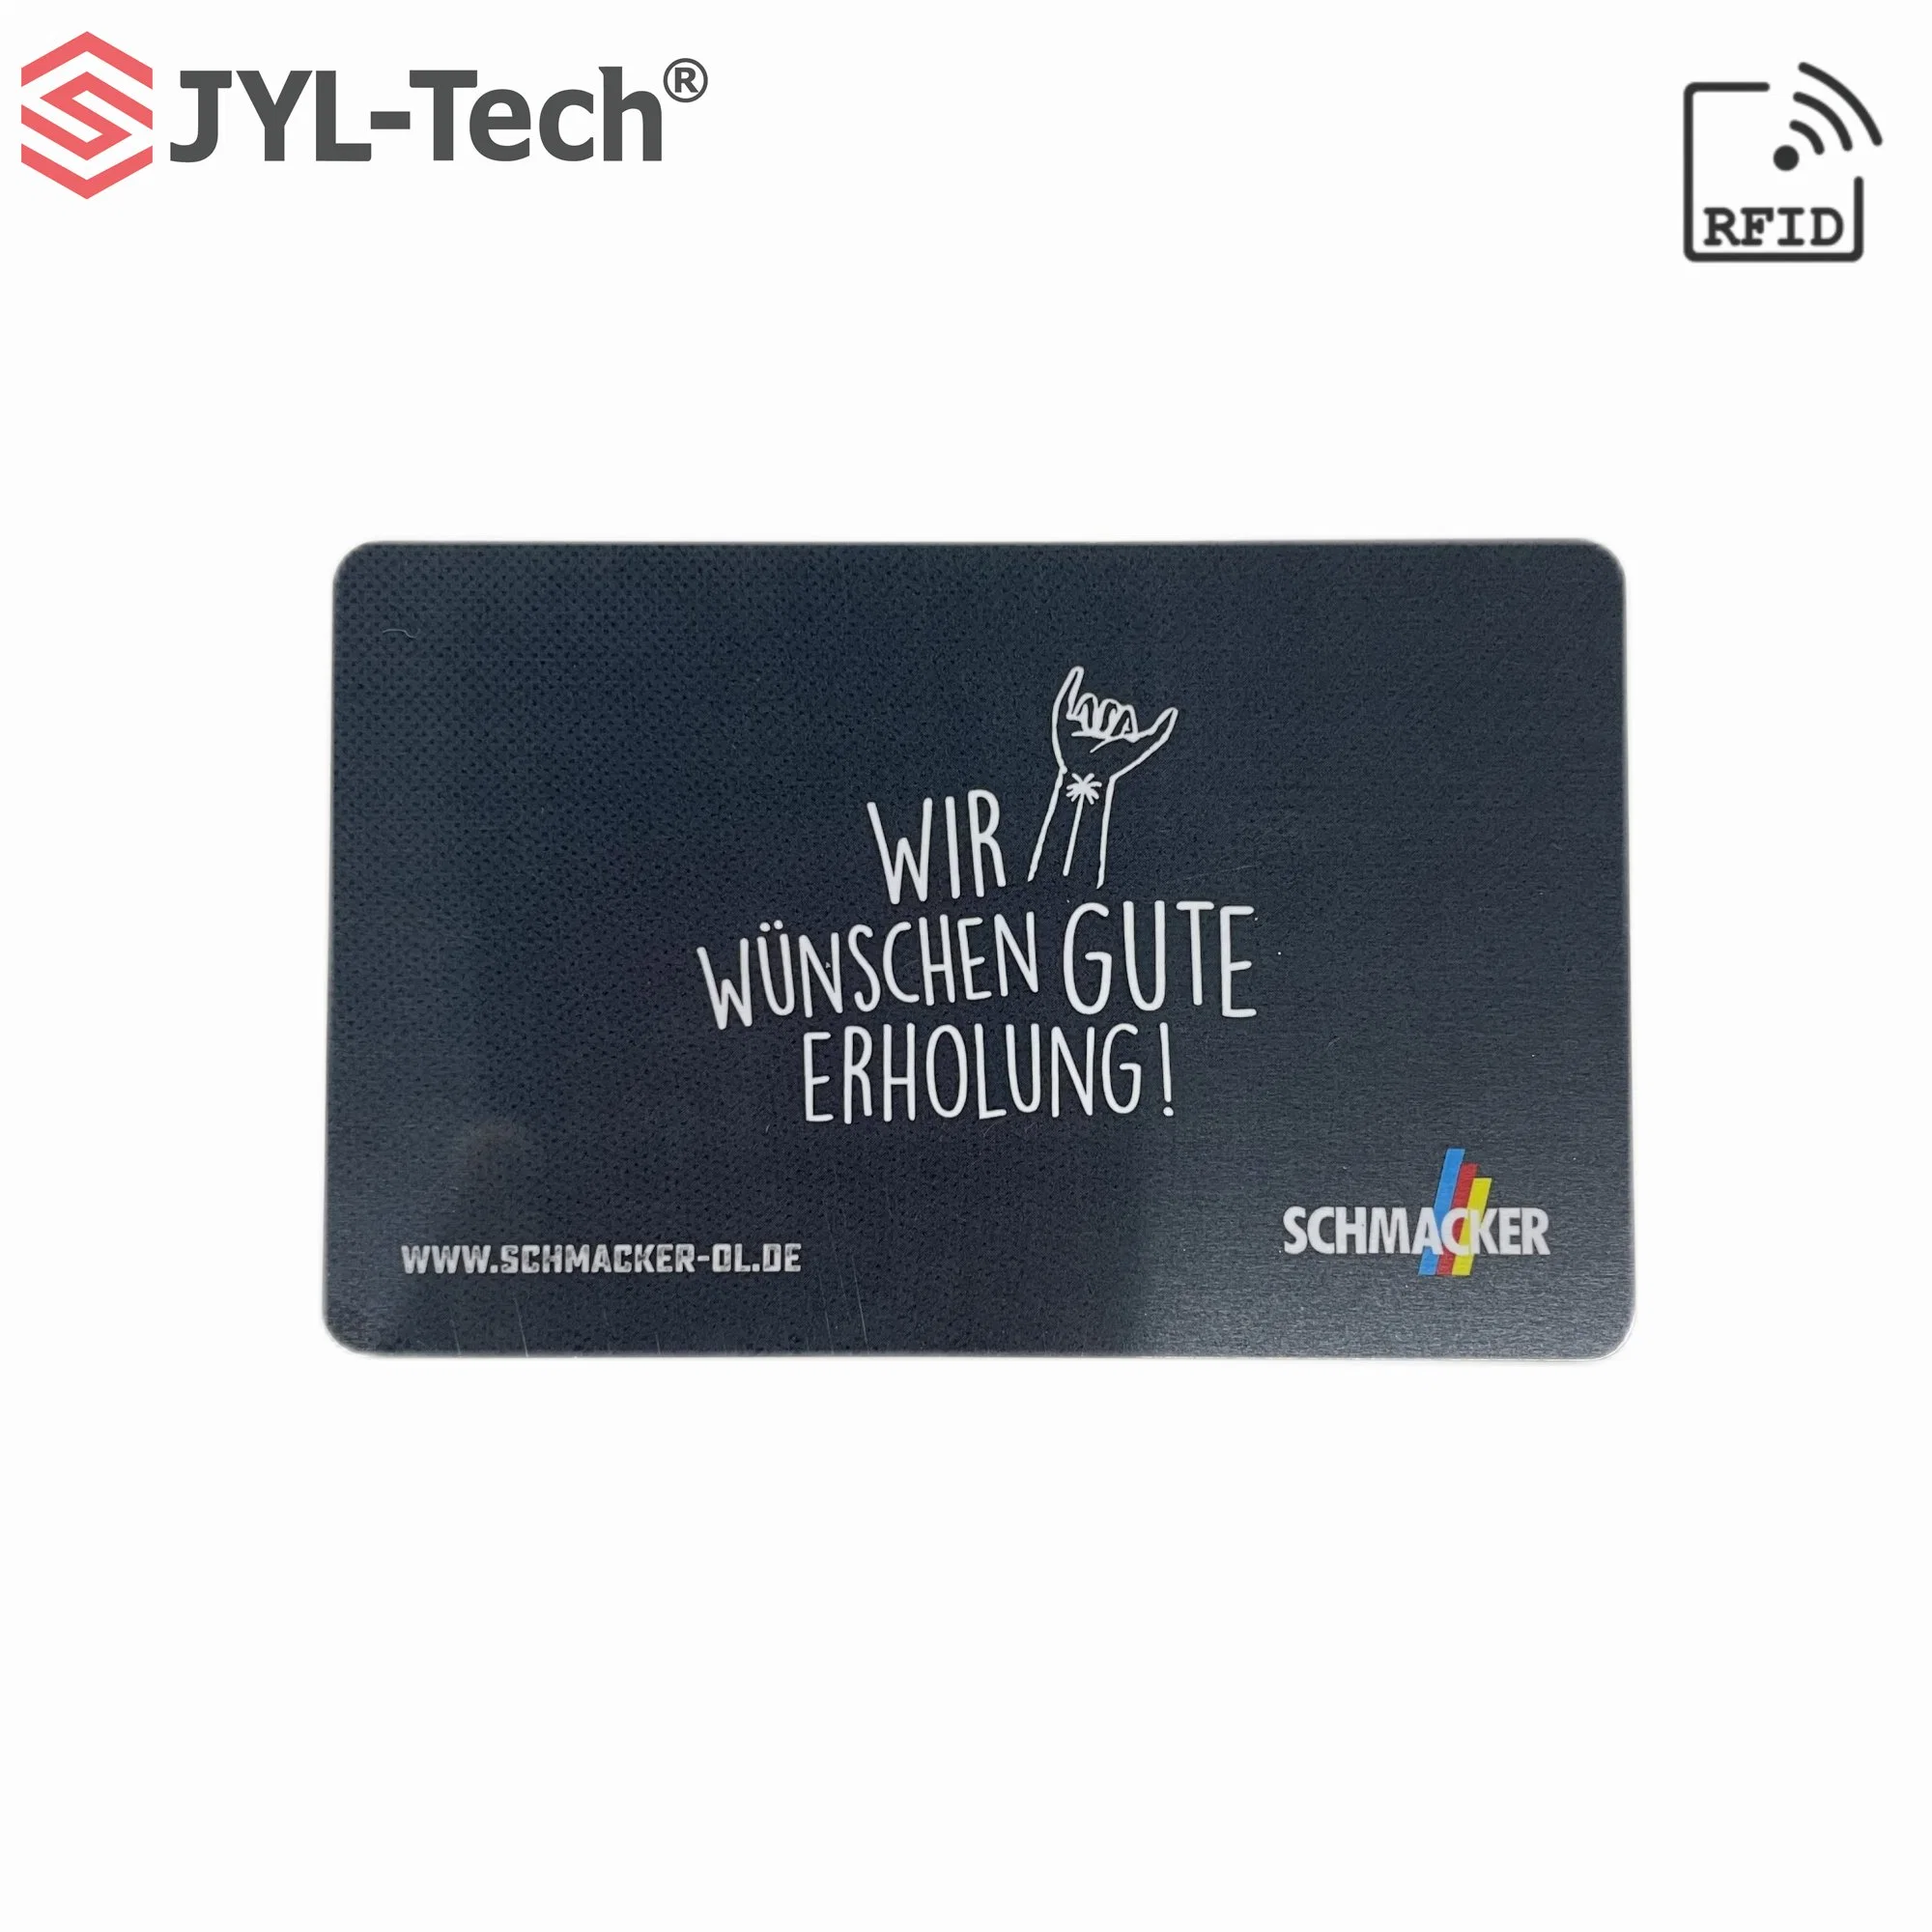 Access Key Card RFID Hf Hotel Key Card Smart Card